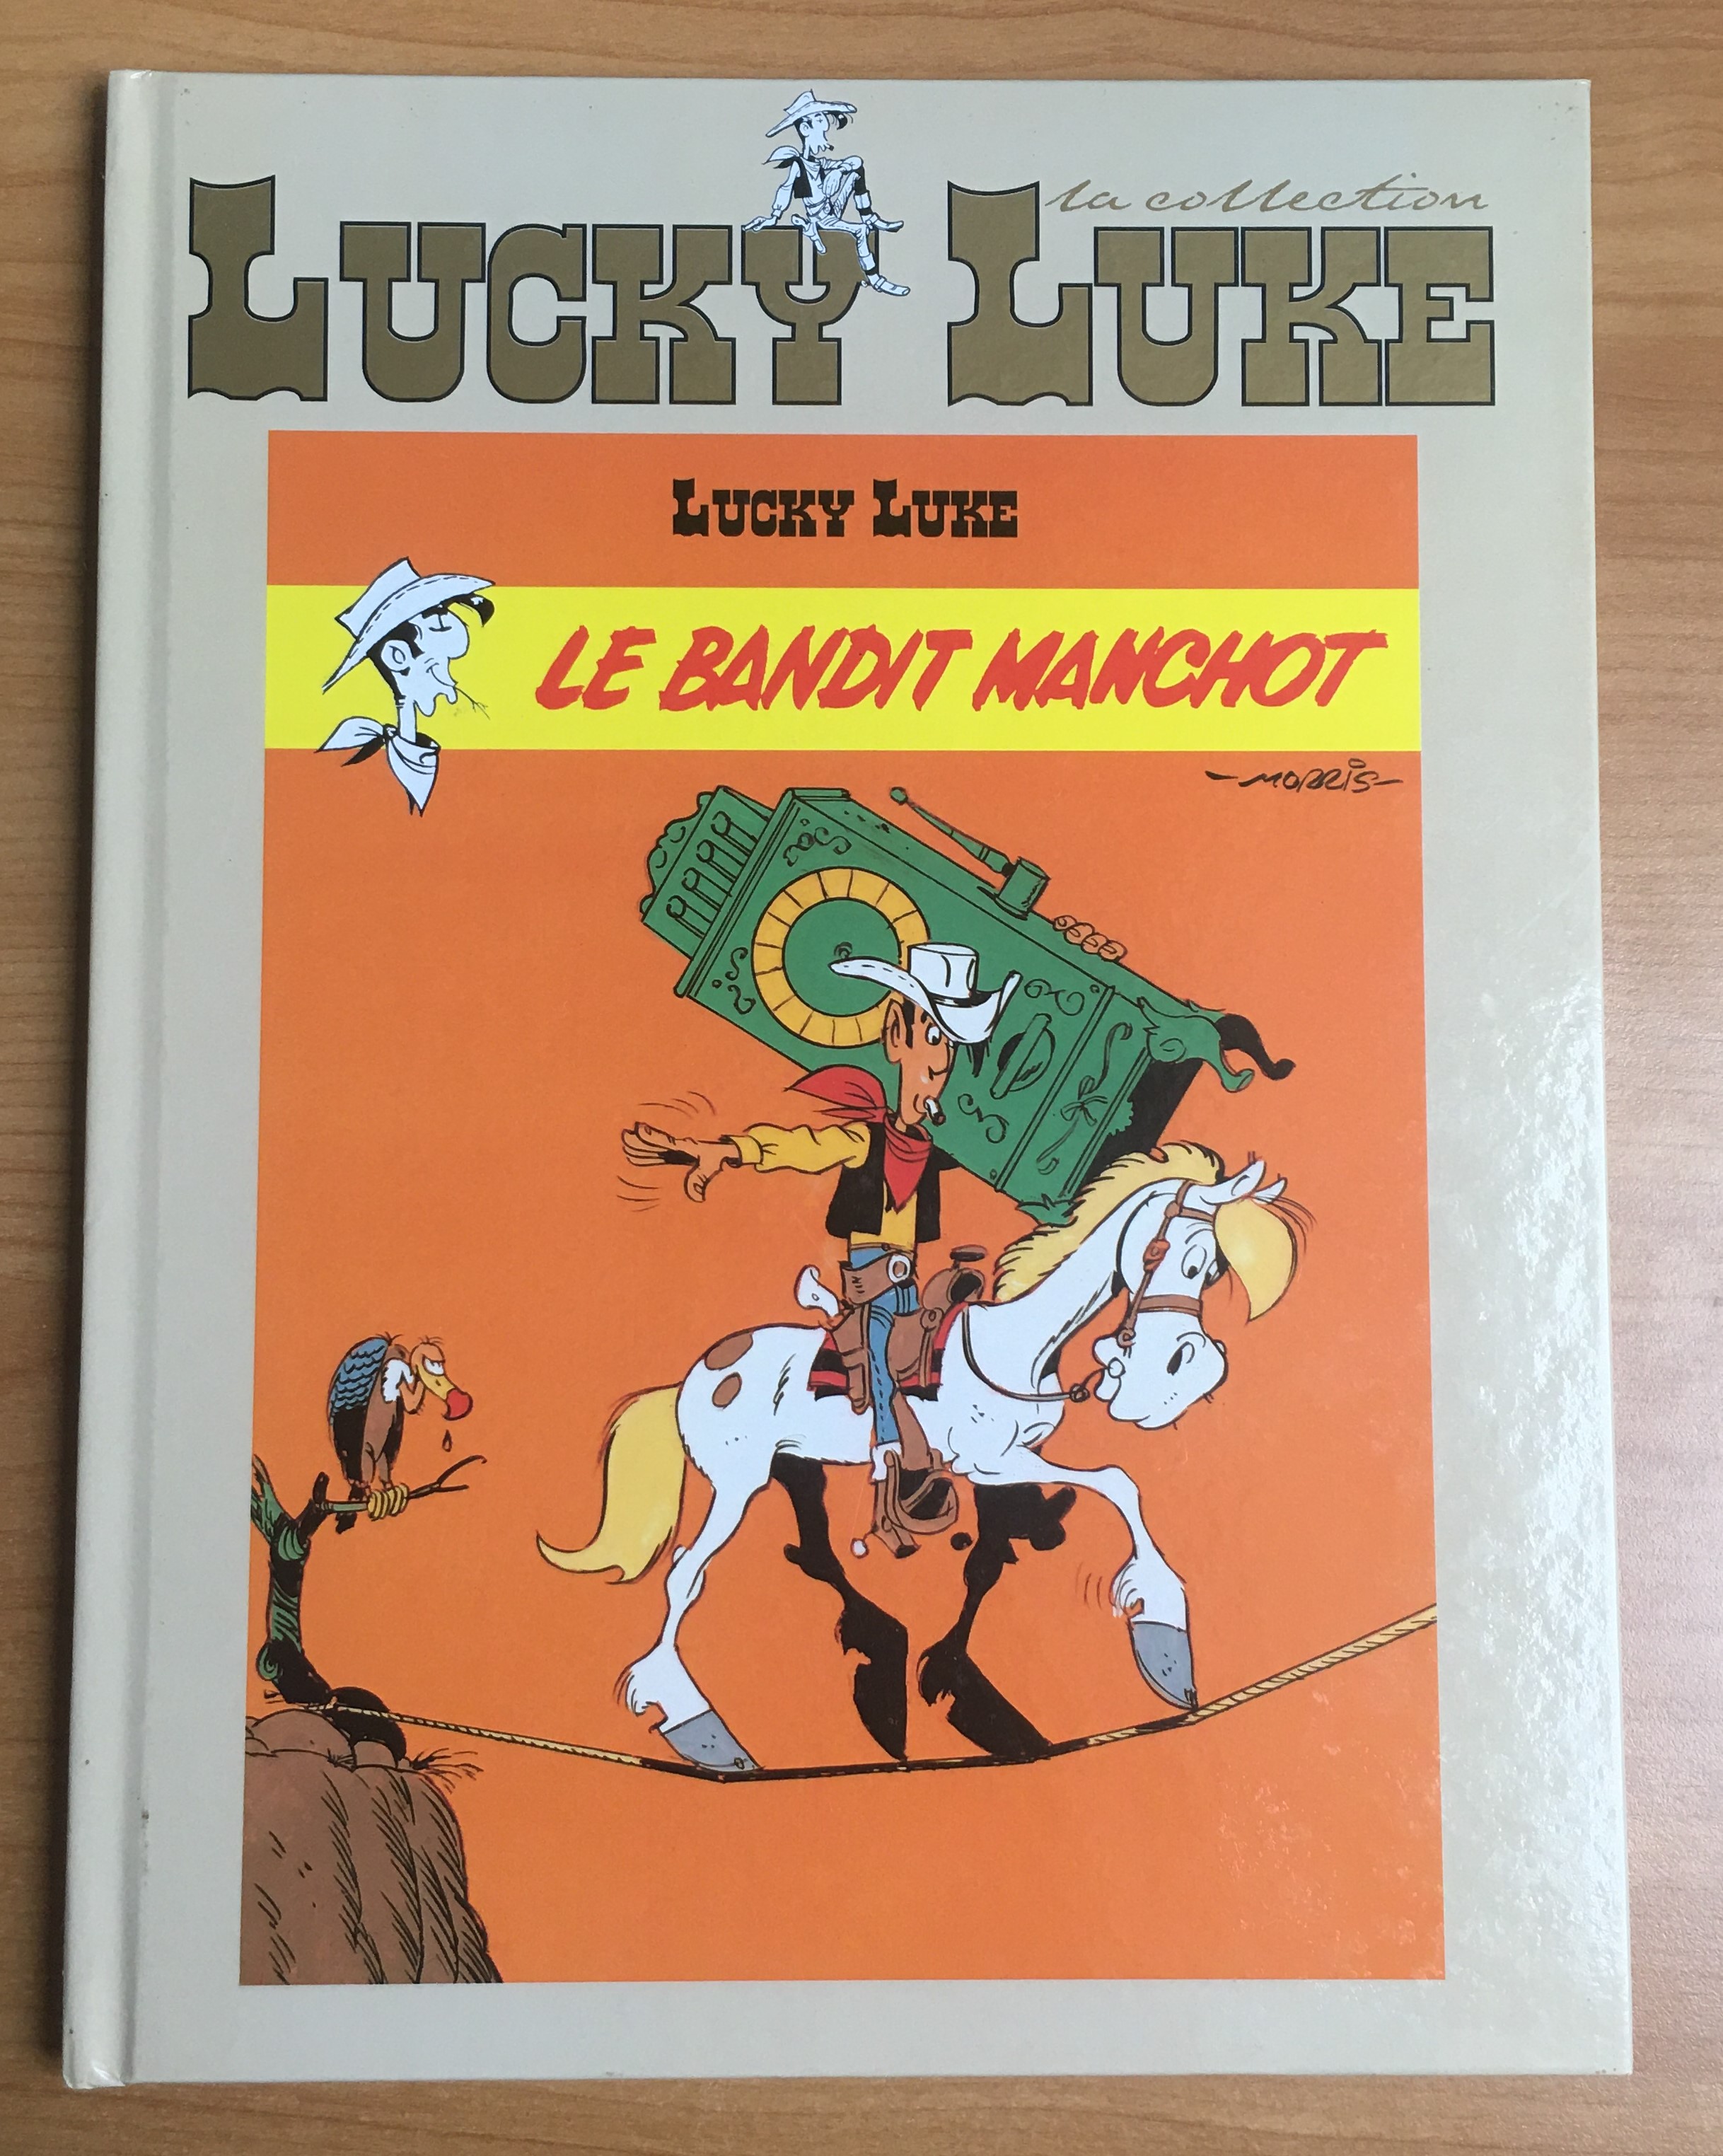 lucky-bandit2